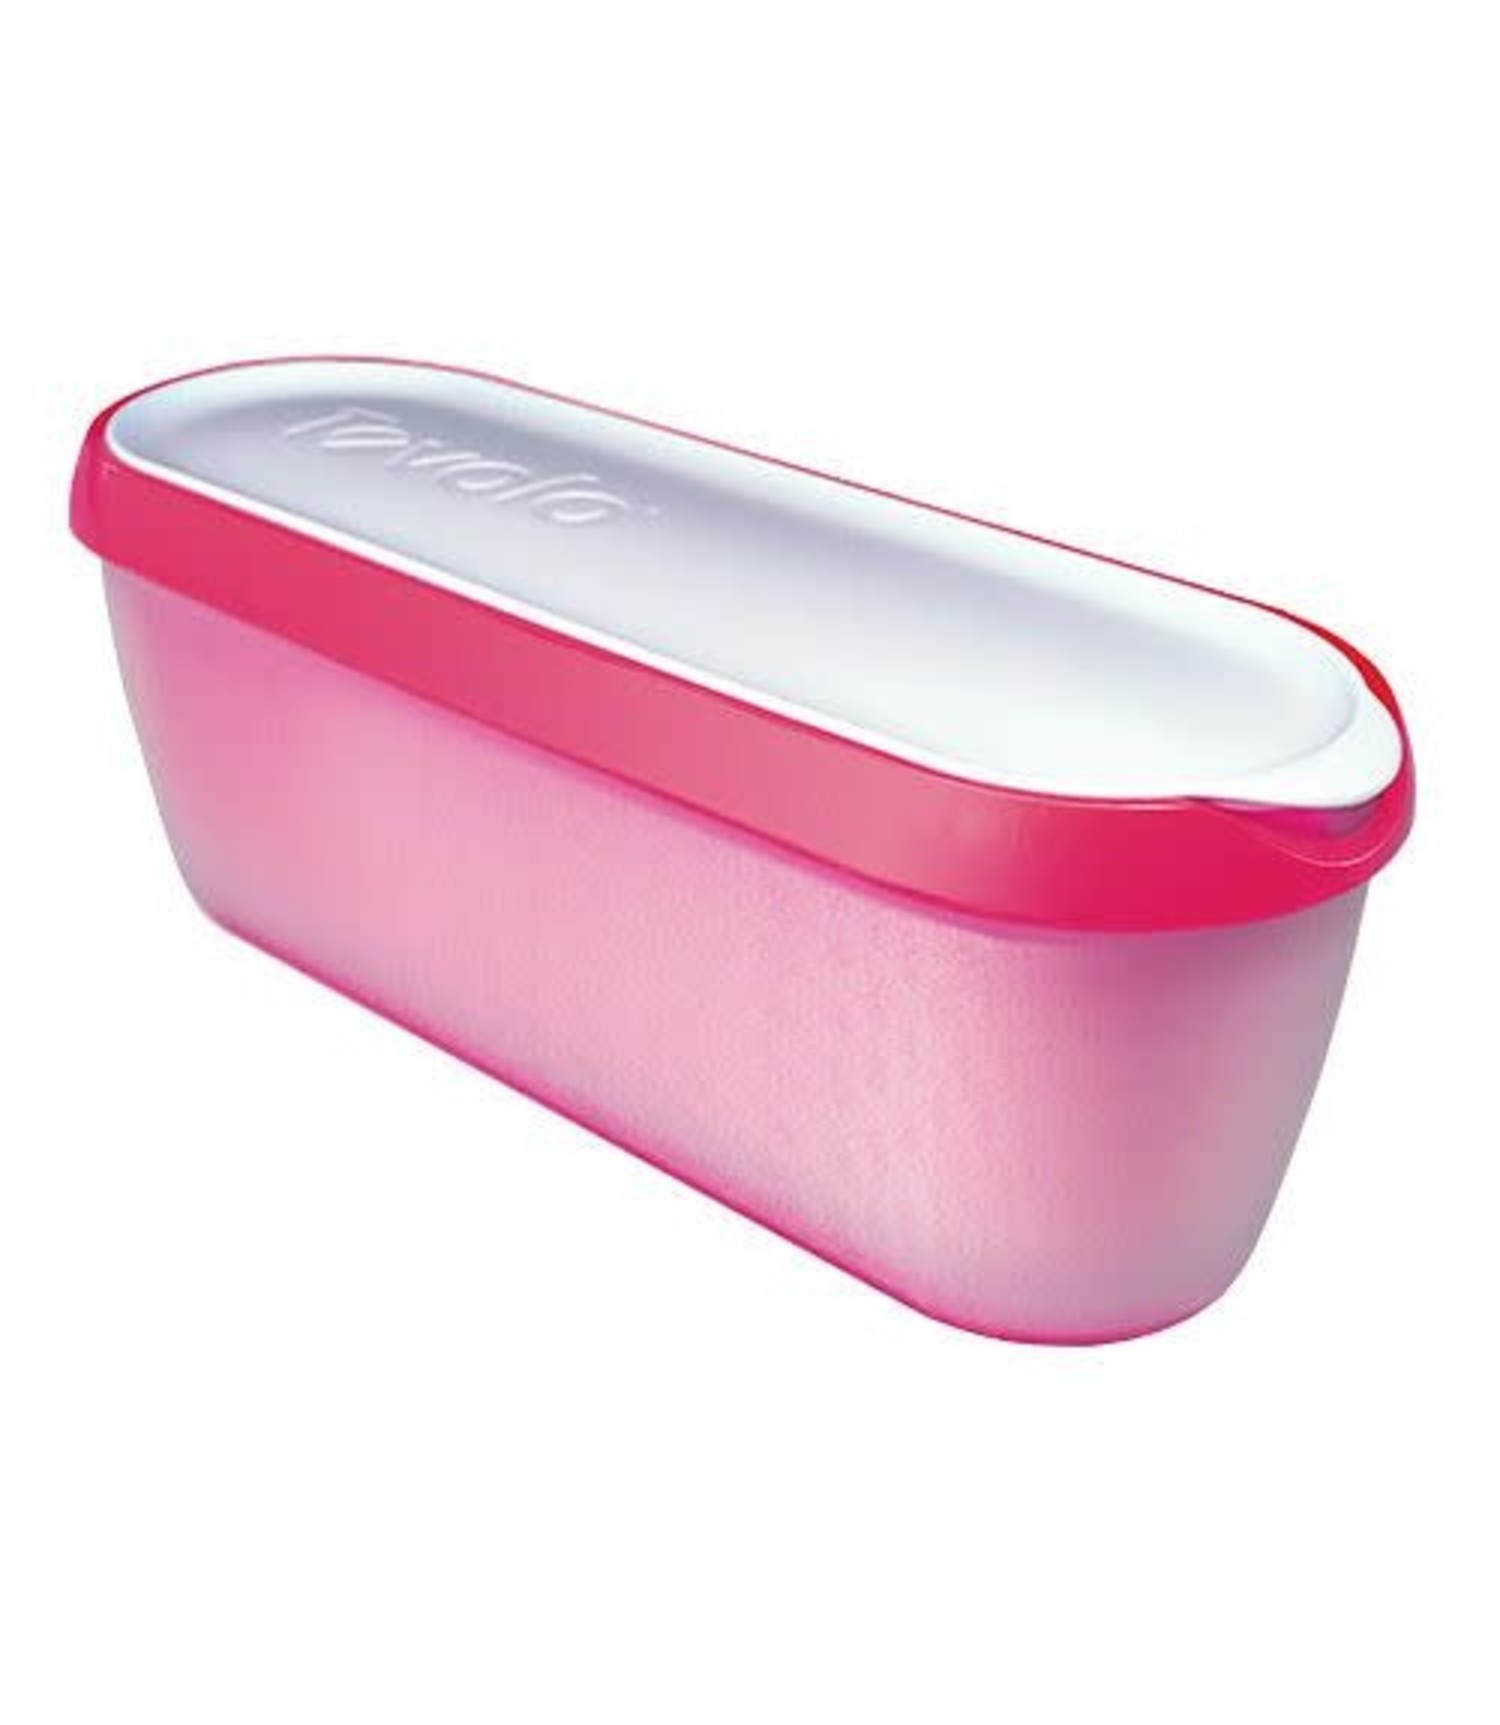 Tovolo Mini Ice Cream Storage Tub - Whisk